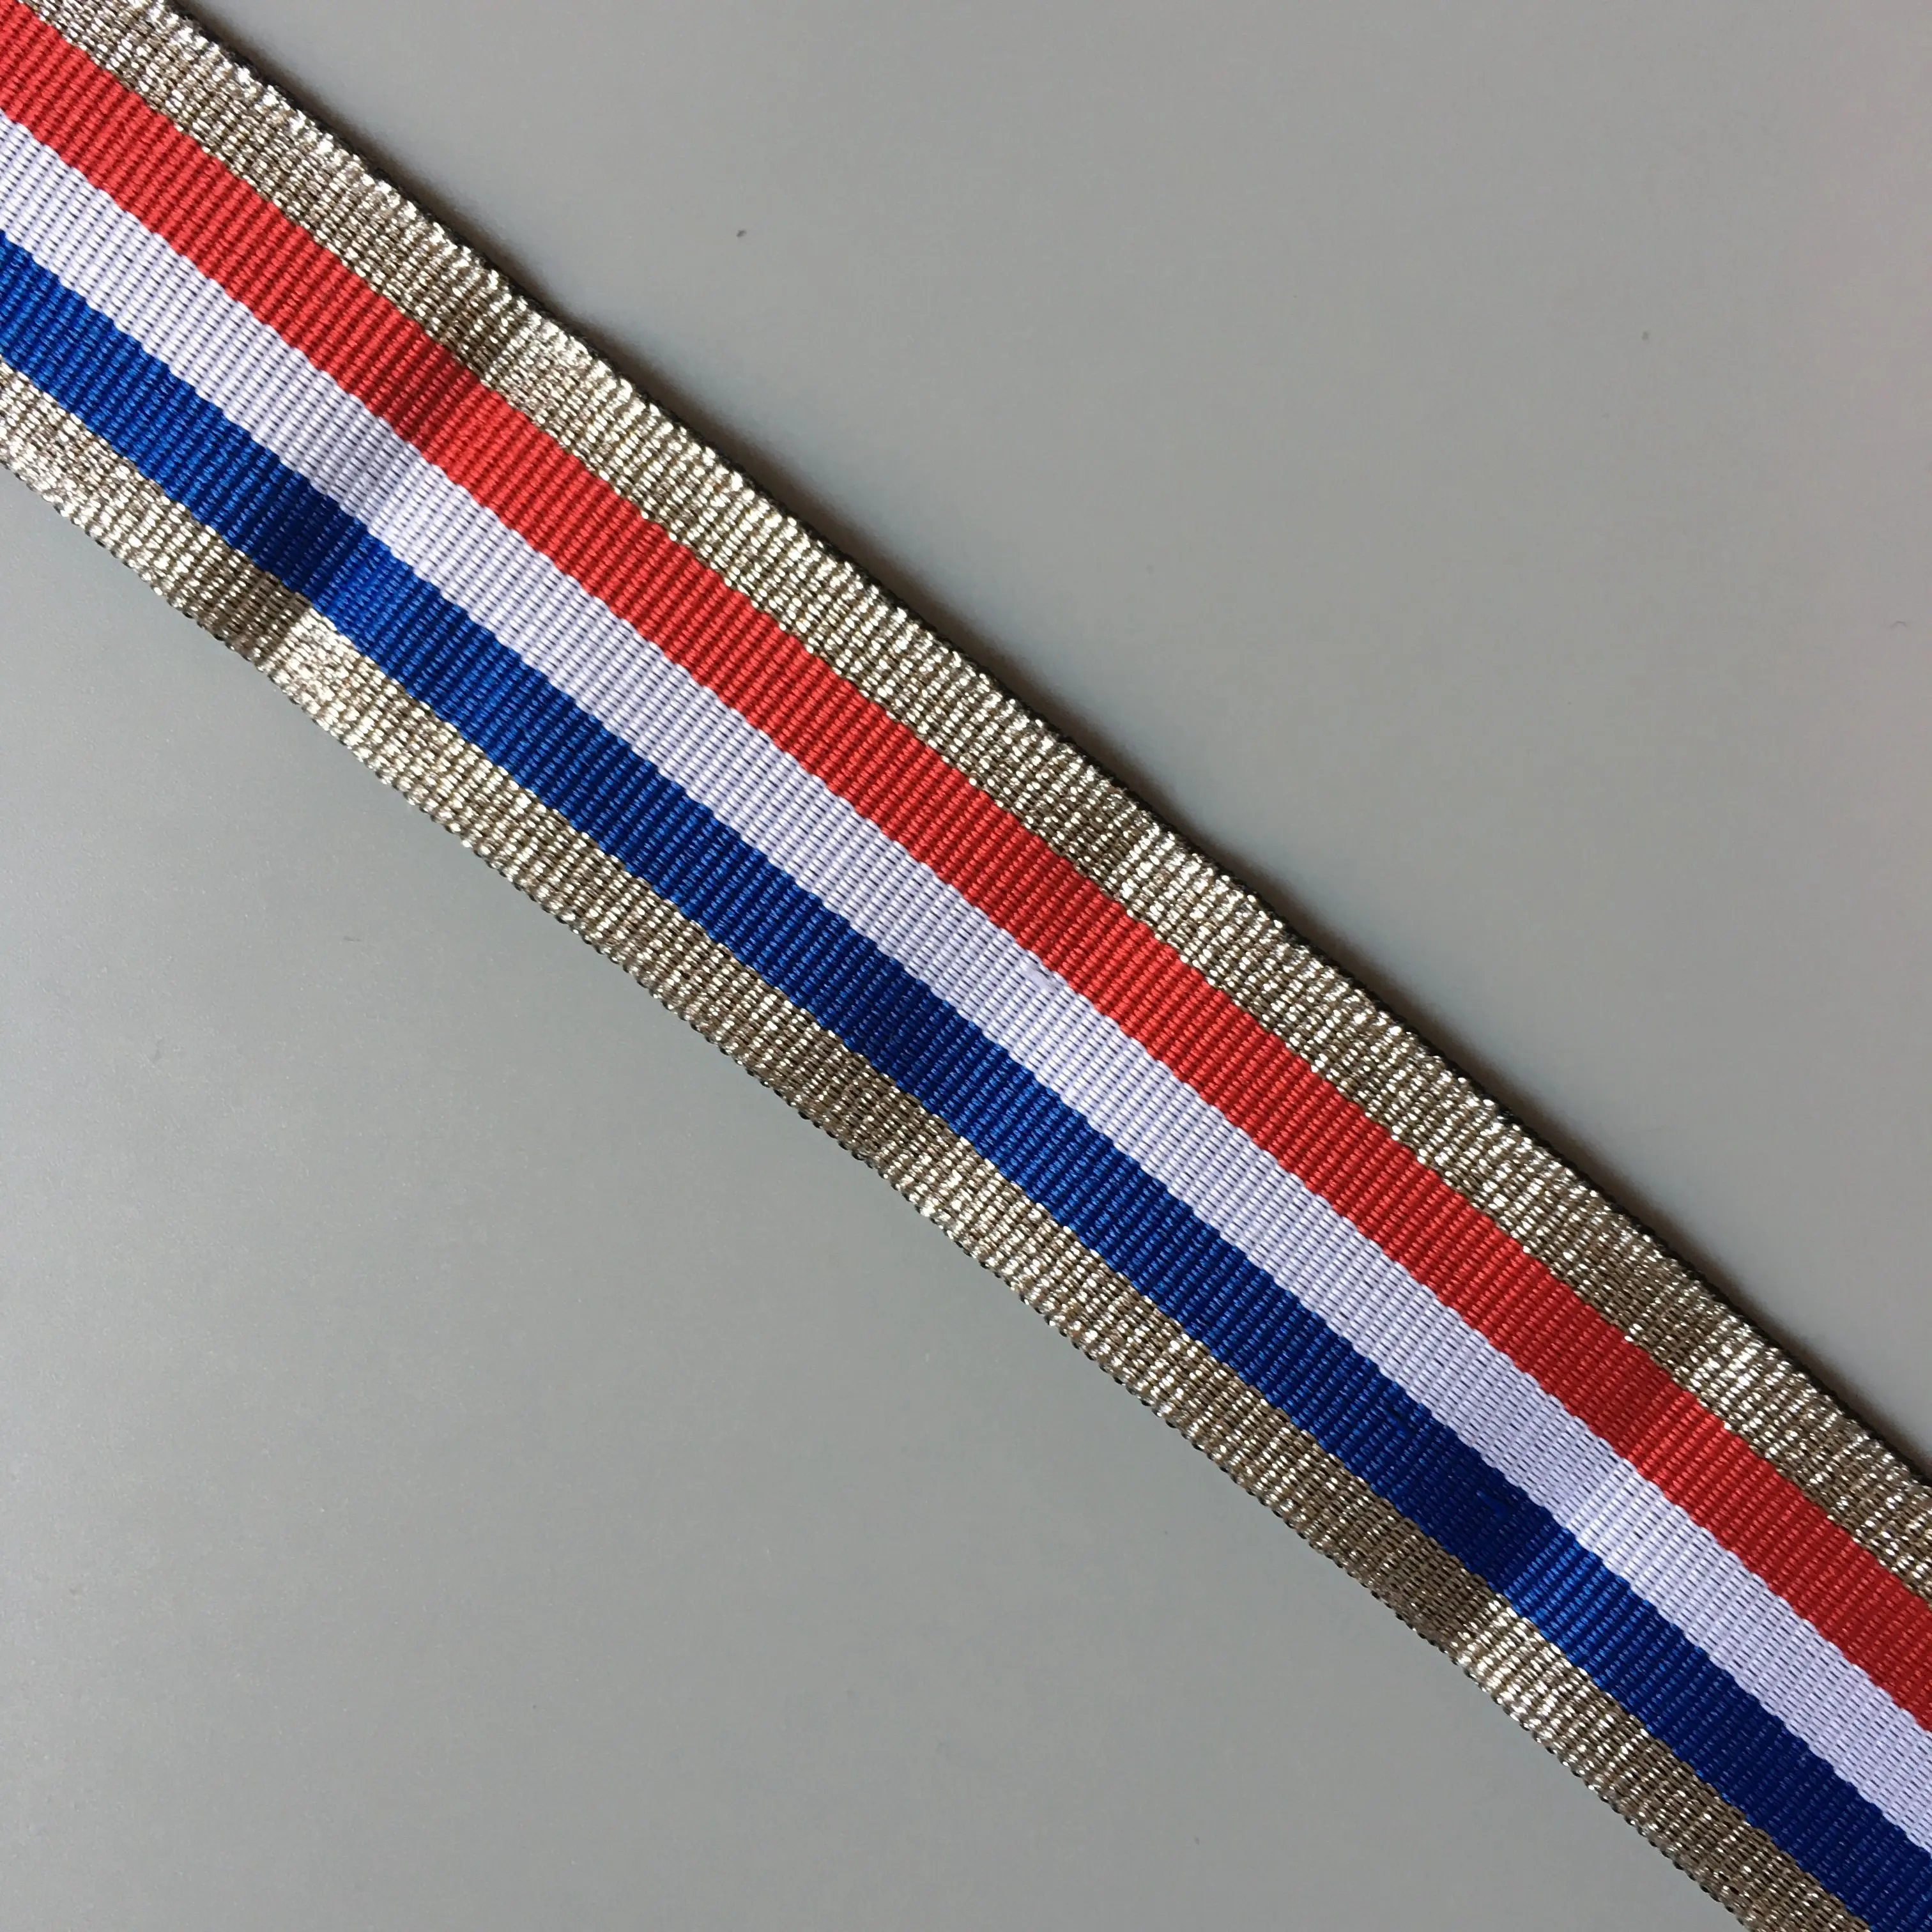 Nouveau drapeau français métallique avec rayures, couleur argent, blanc, bleu, rouge